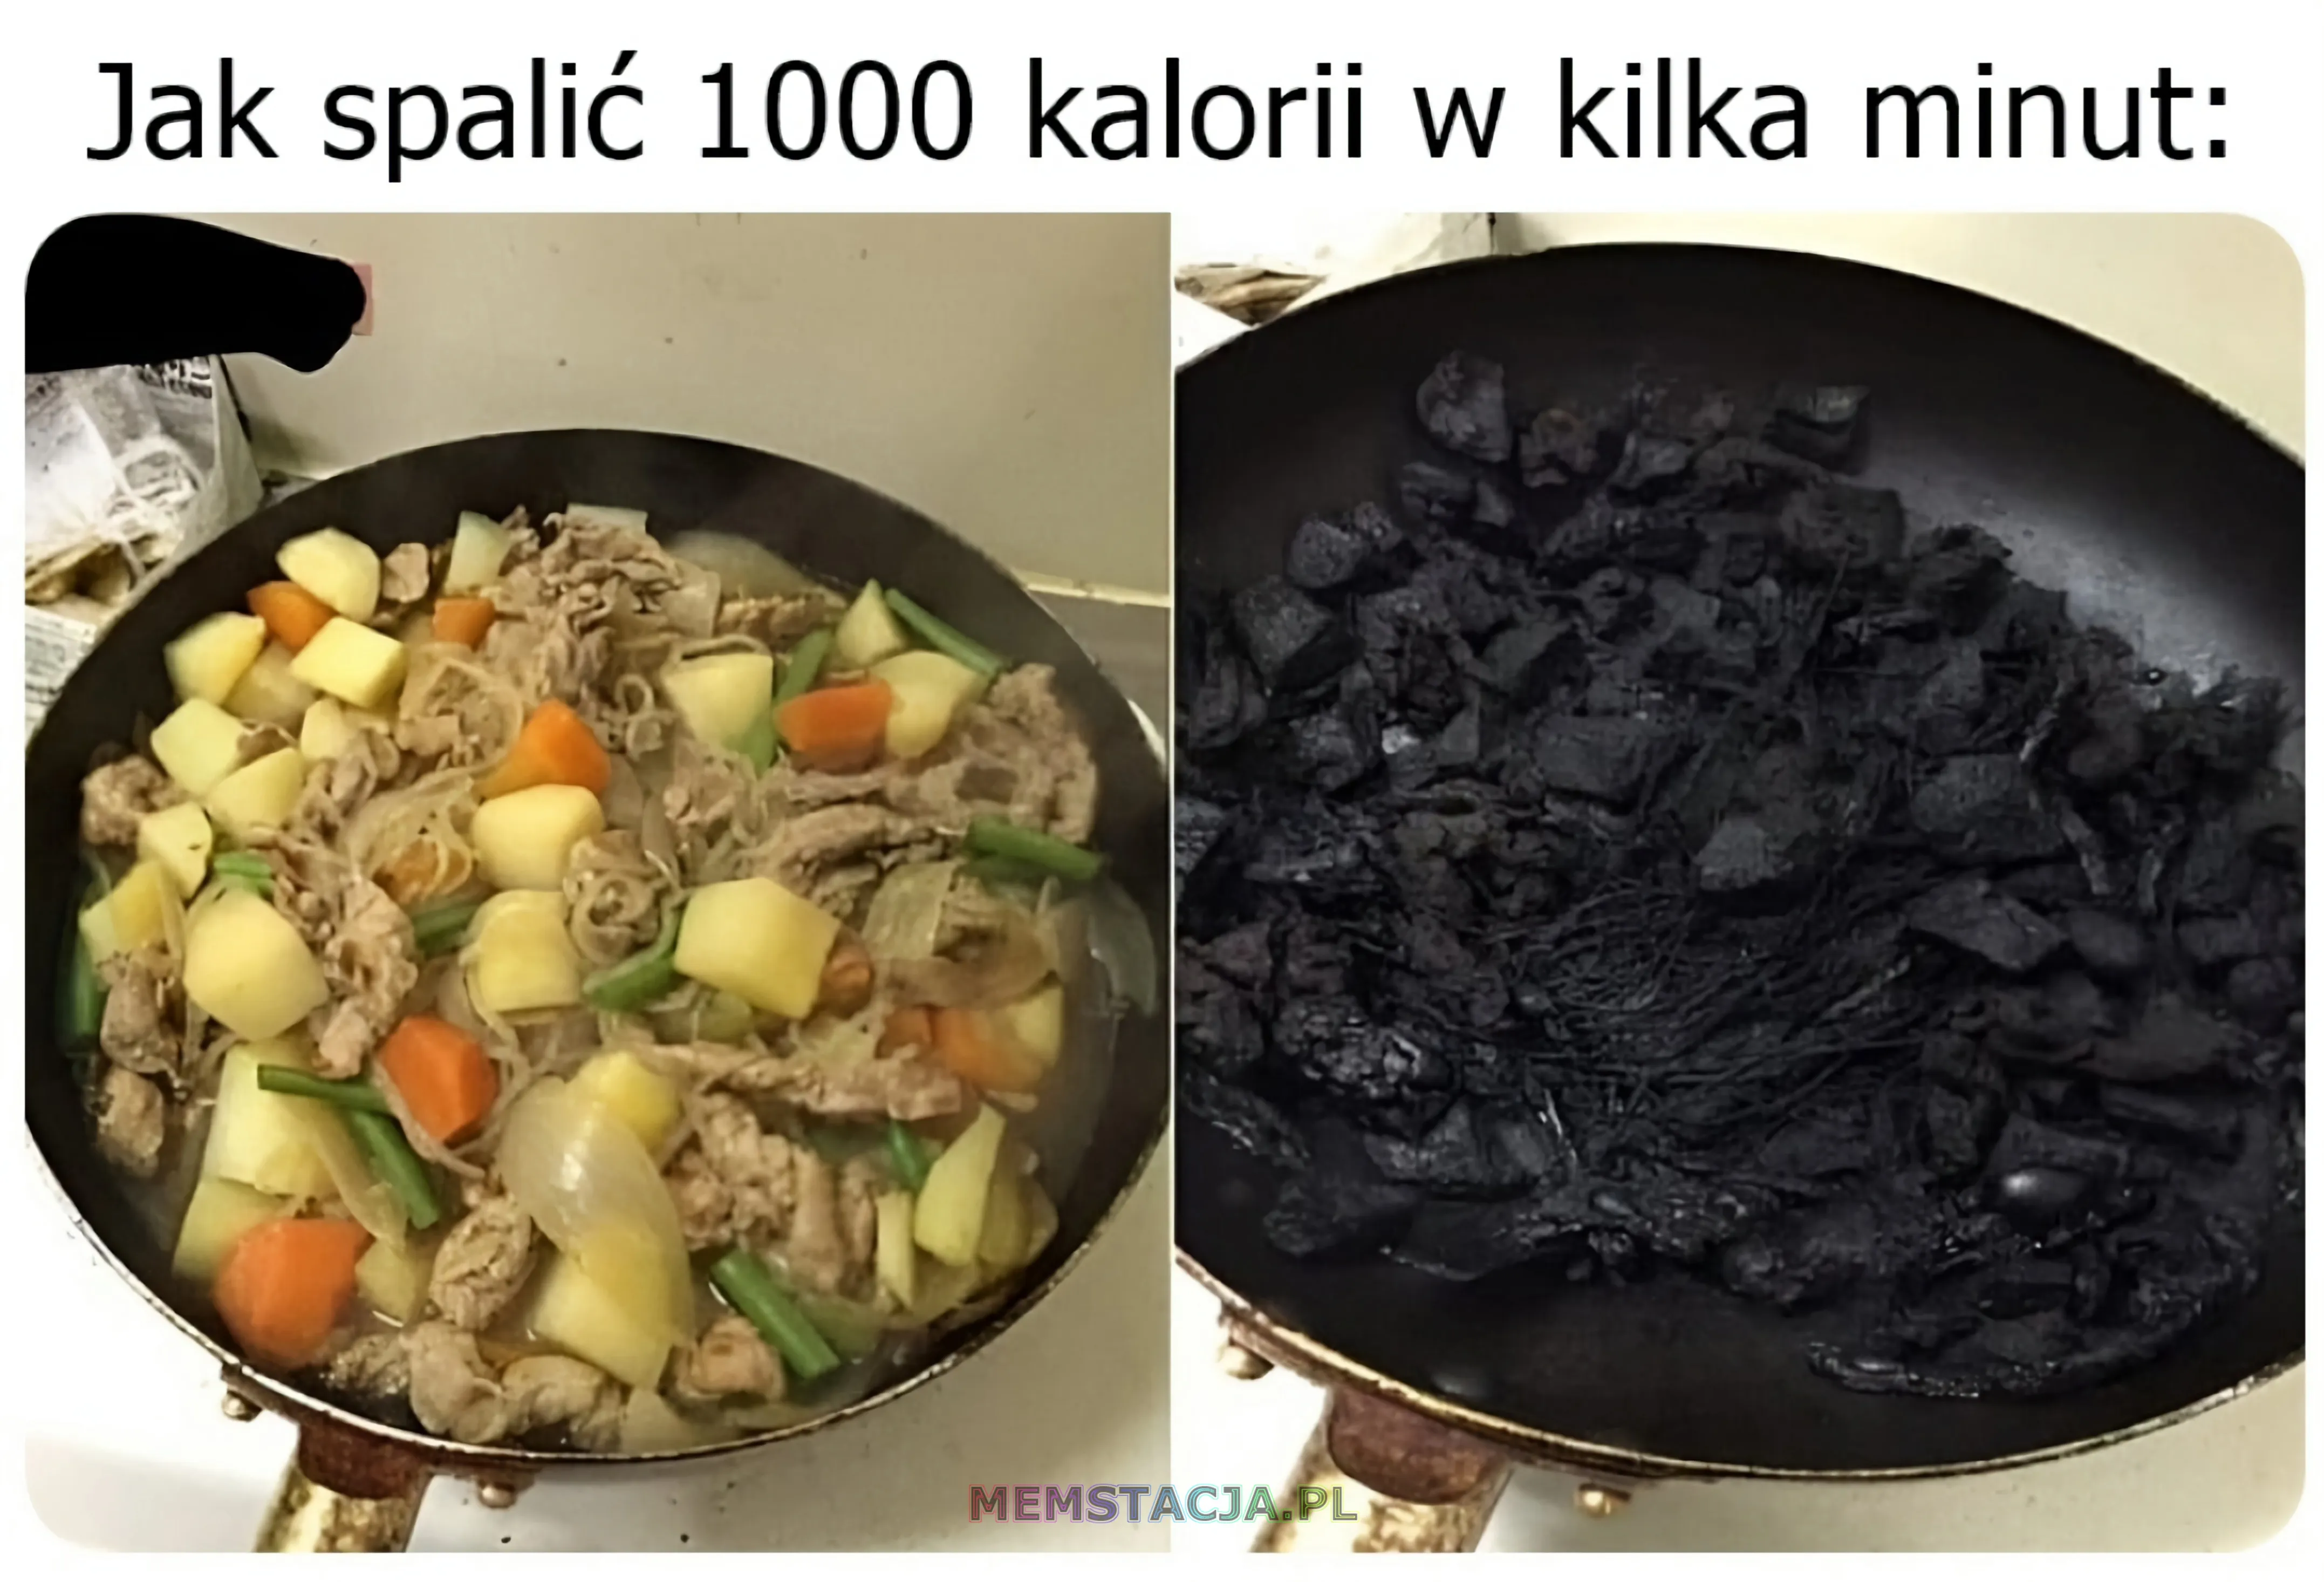 Zdjęcia przedstawiające patelnię z pysznym jedzeniem i drugie z kawałkami węgla: 'Jak spalić tysiąc kalorii w kilka minut'